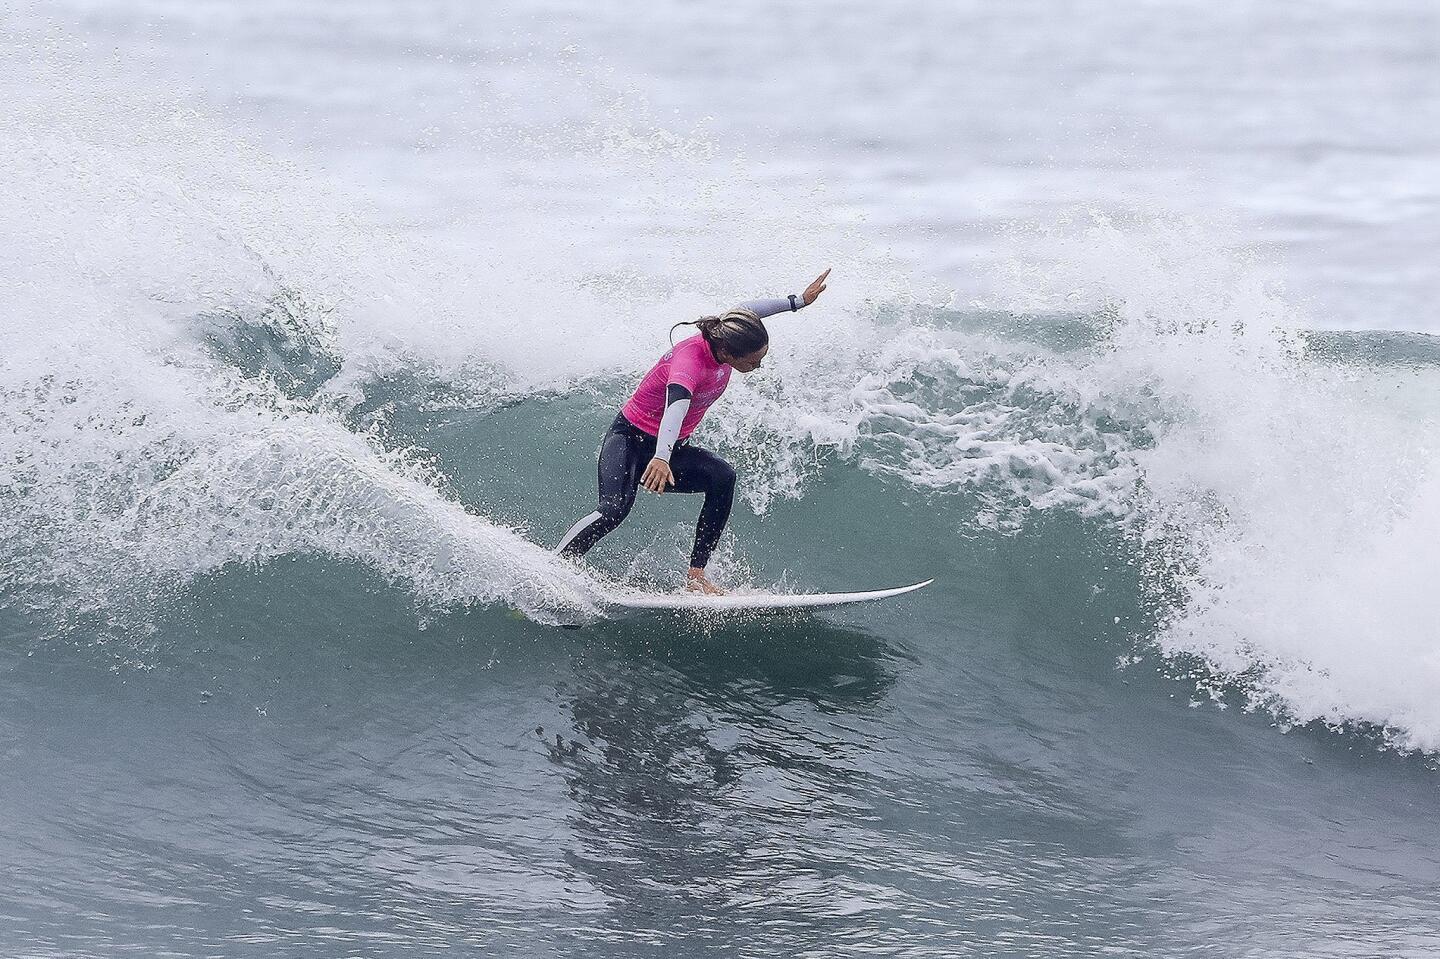 La australiana Sally Fitzgibbons participa en el evento Swatch Pro 2017 perteneciente a la Liga de Surf Mundial, en Trestles, San Clemente, California.